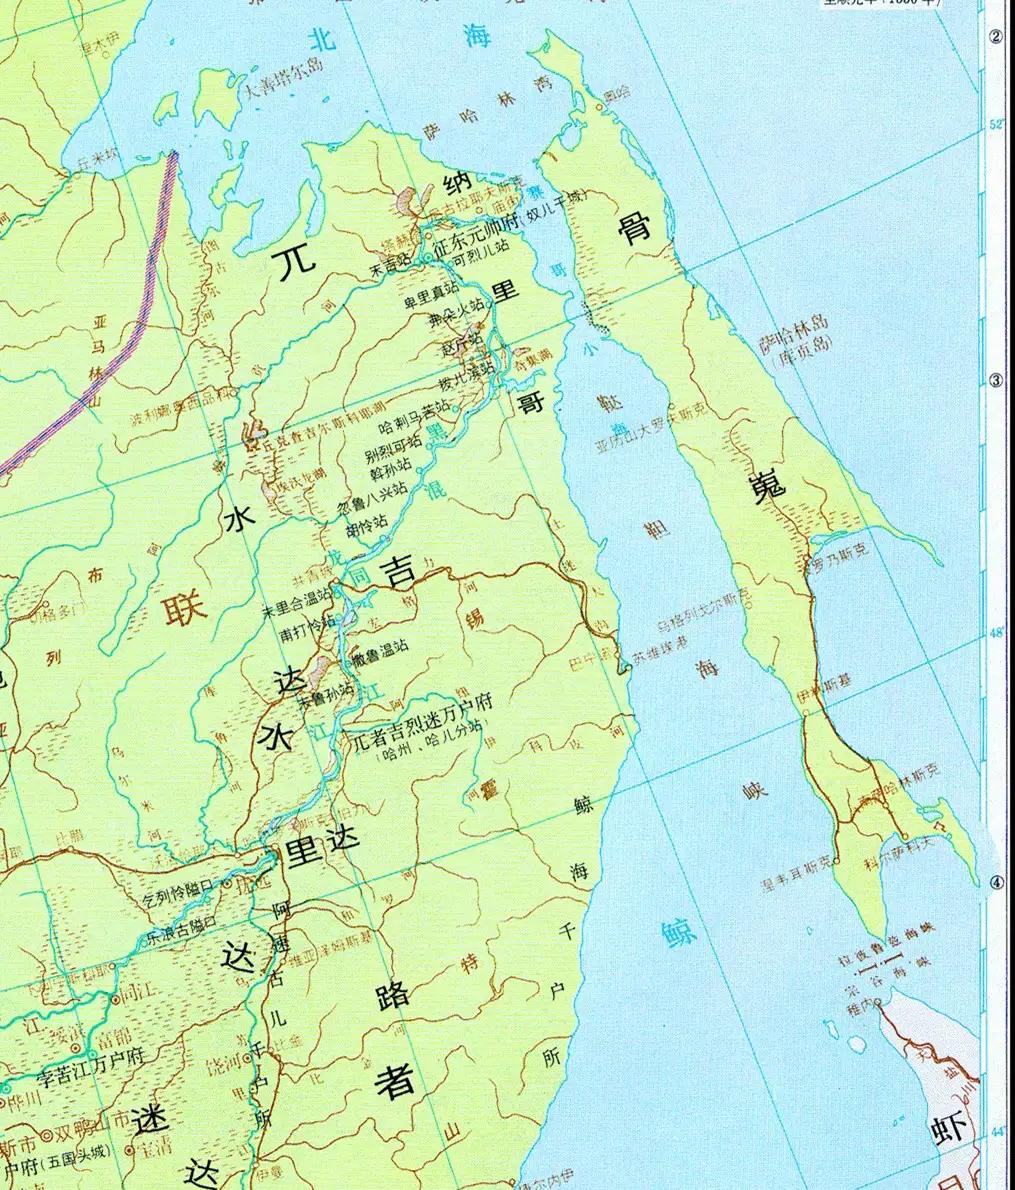 黑龙江出海口：中国东北出海的另一条通道是否可行？